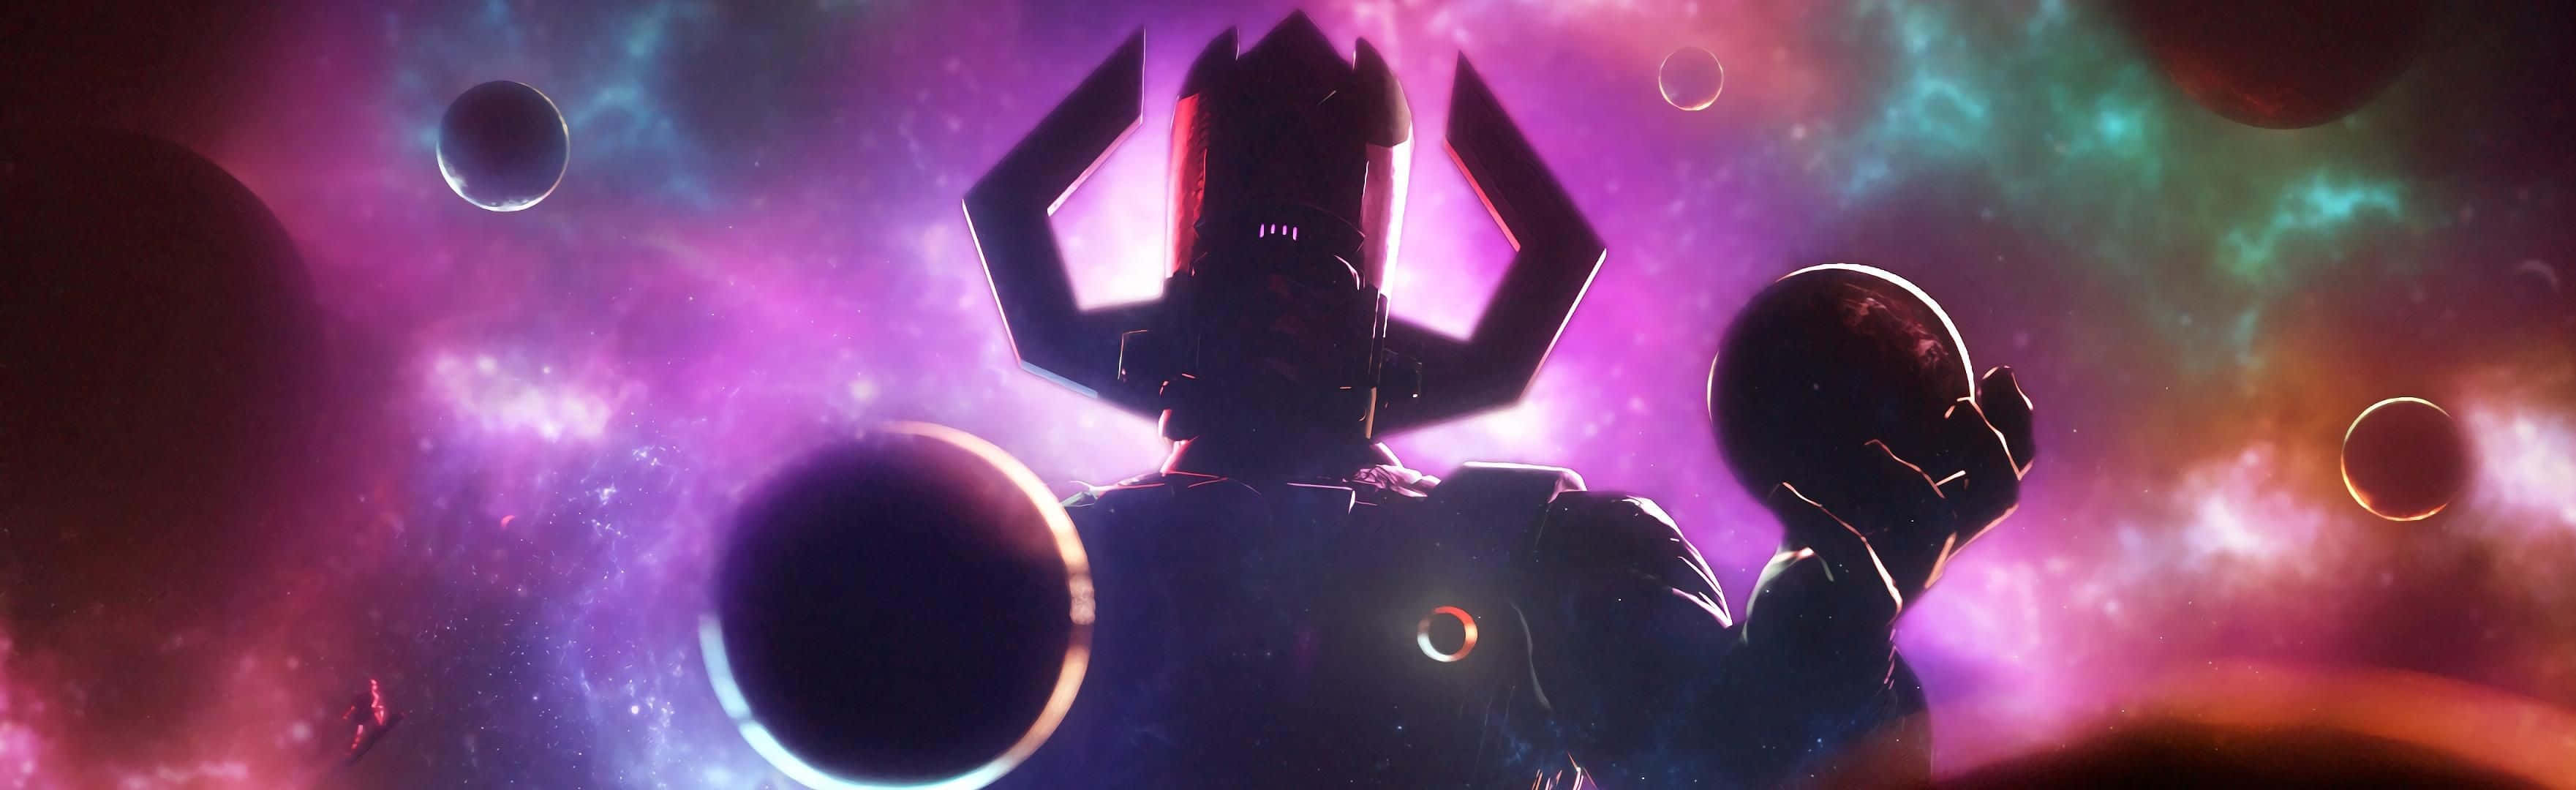 Galactus,el Devorador De Mundos, Se Alza Imponente En Un Paisaje Cósmico. Fondo de pantalla